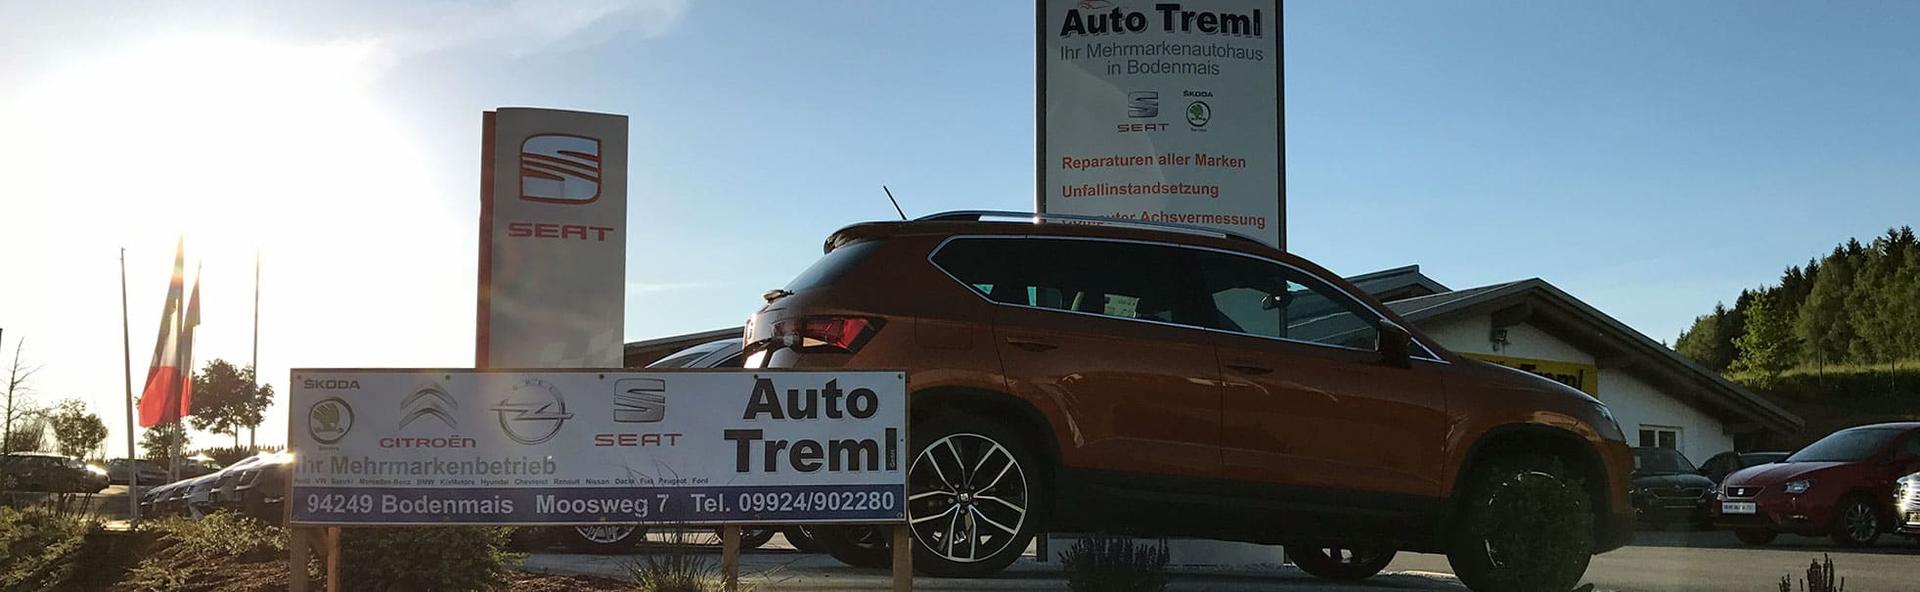 Auto Treml GmbH Unser Autohaus steht für professionellen Service sowie umfangreiche und kompetente Beratung beim Kauf von EU-Fahrzeugen, Neu- und Gebrauchtwagen.